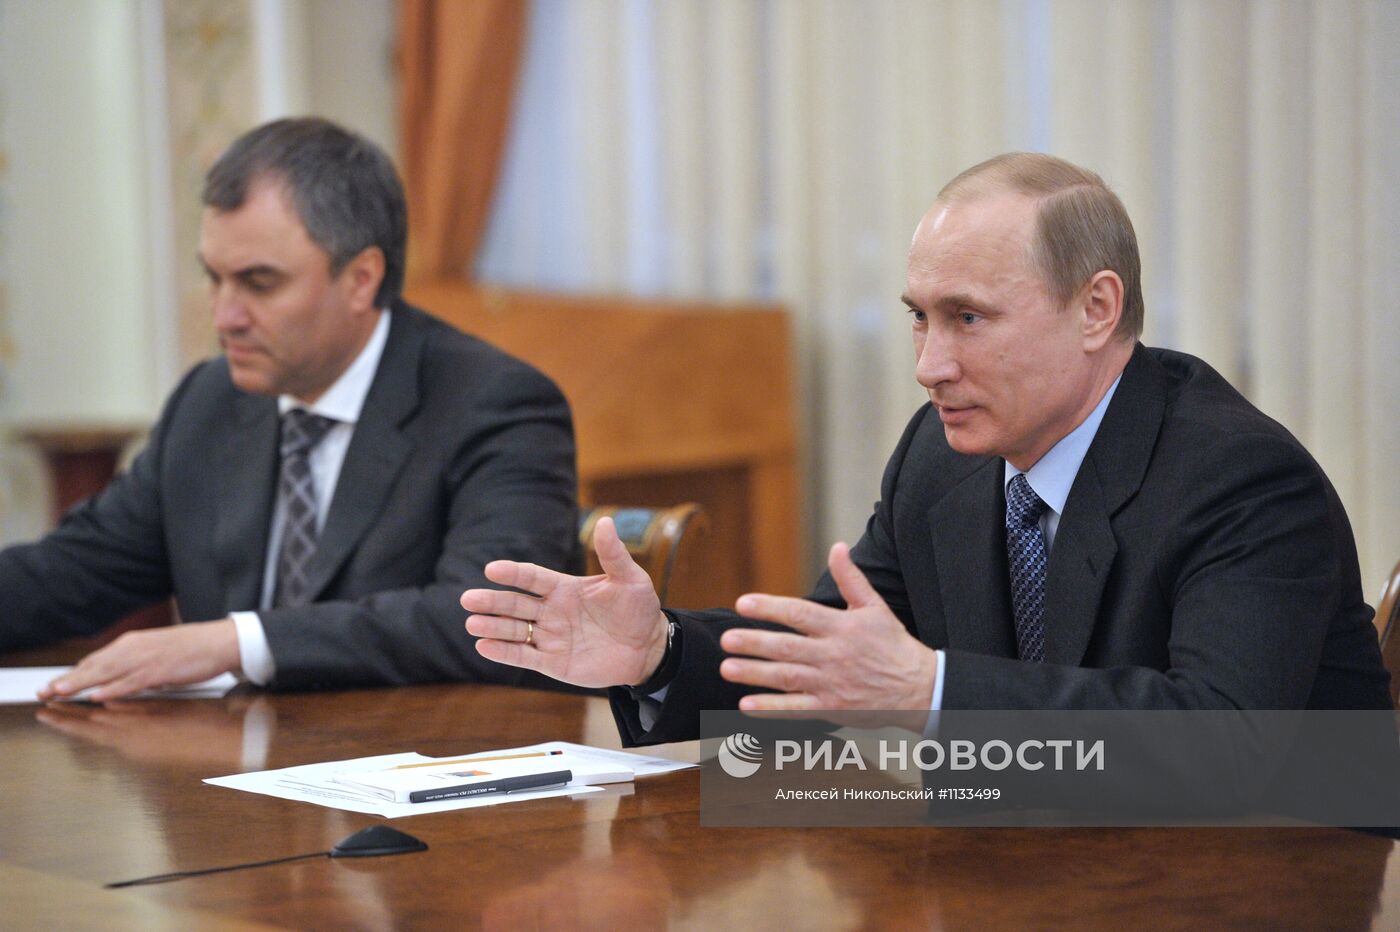 Встреча В.Путина с руководством партии "Единая Россия"